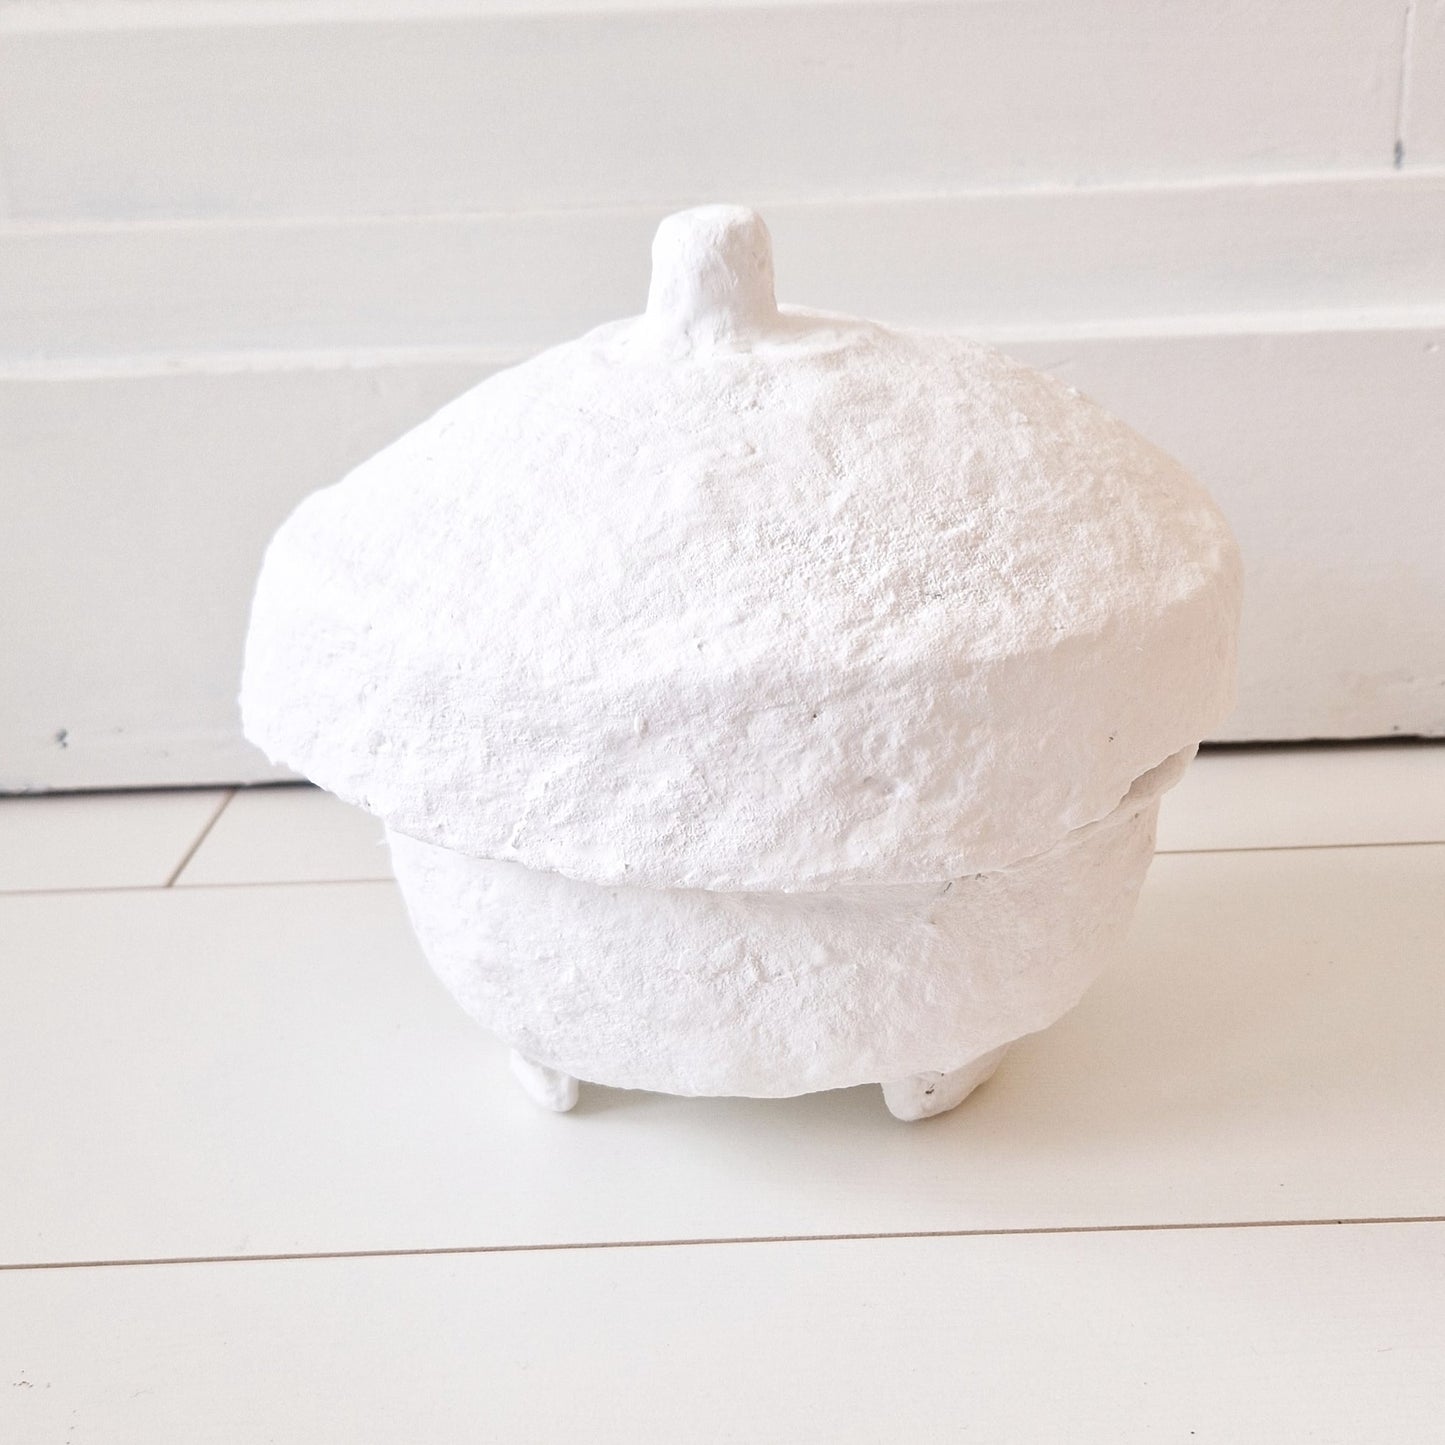 Papier-mâché pot white with lid